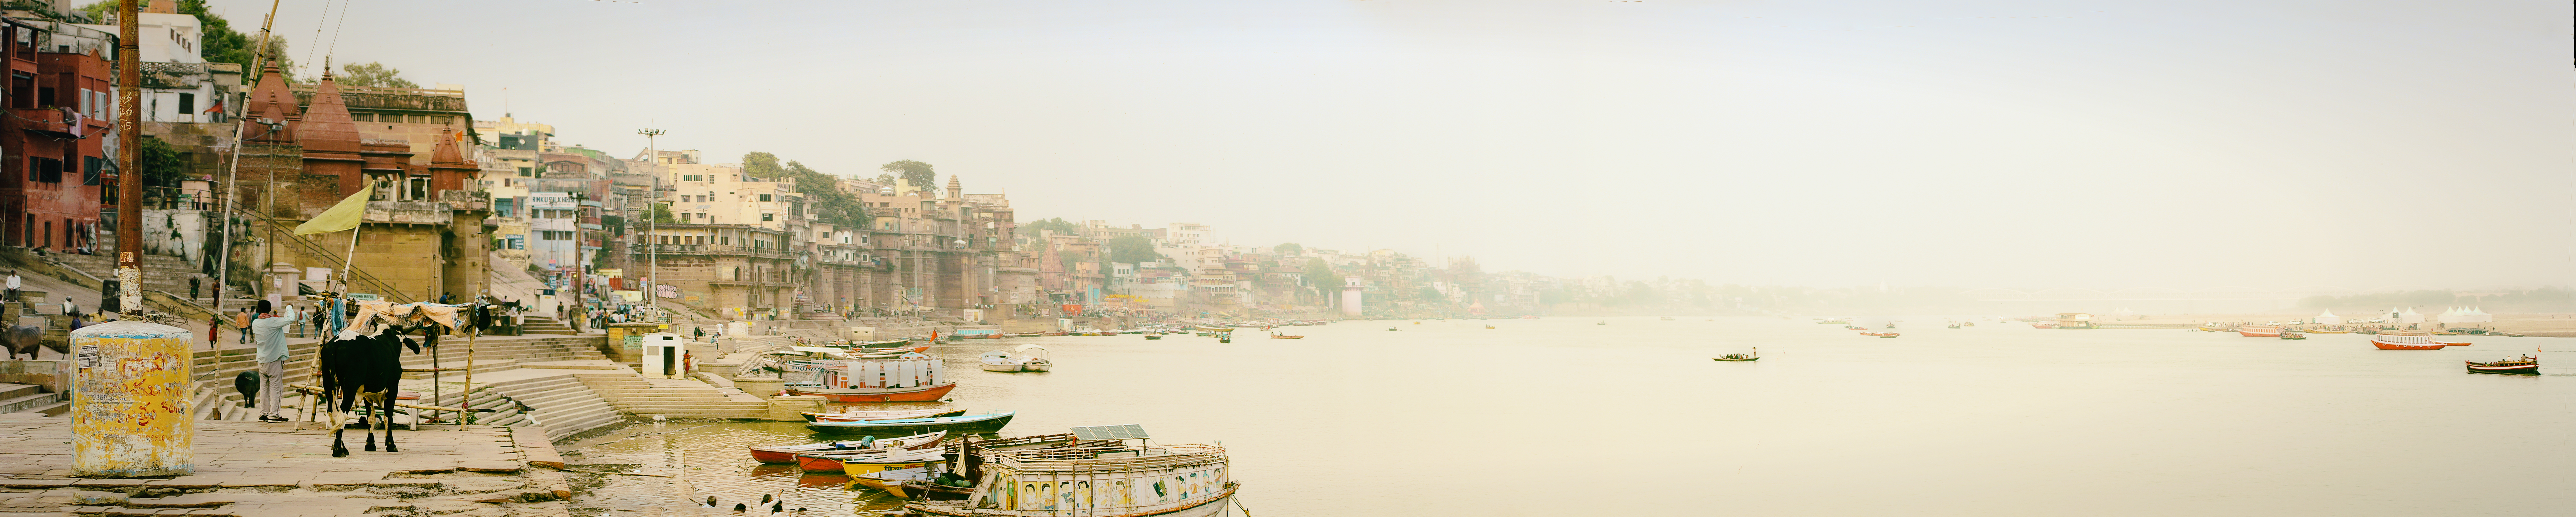 India: Un paseo por el Ganges. - Viaje de 20 días por India y Nepal, con breve escala en Abu Dhabi. (5)